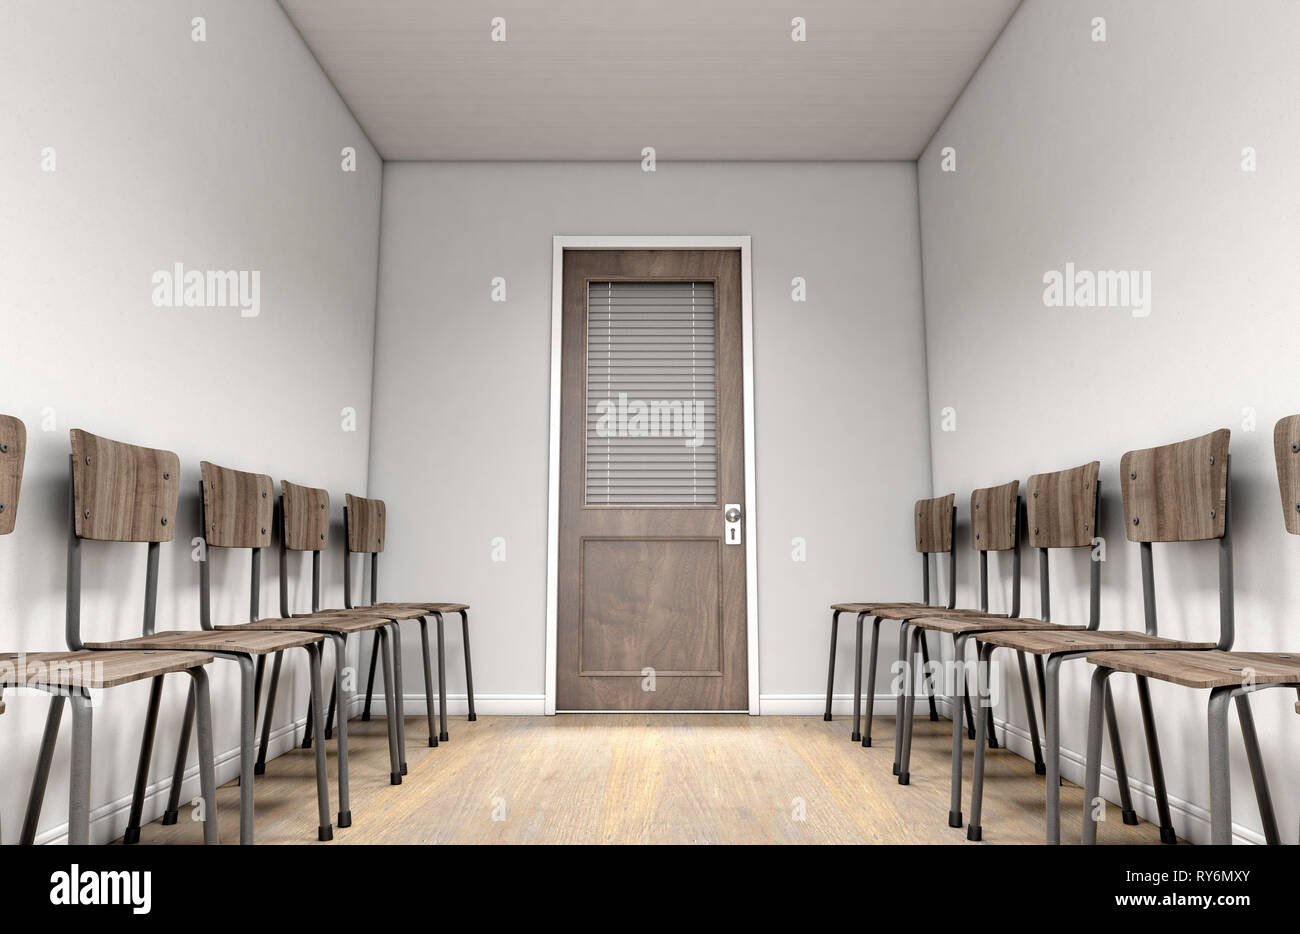 Un passaggio in attesa sala interna con una chiusura ufficio in legno porta in corrispondenza della estremità lontana e sedie allineate su entrambi i lati - 3D render Foto Stock